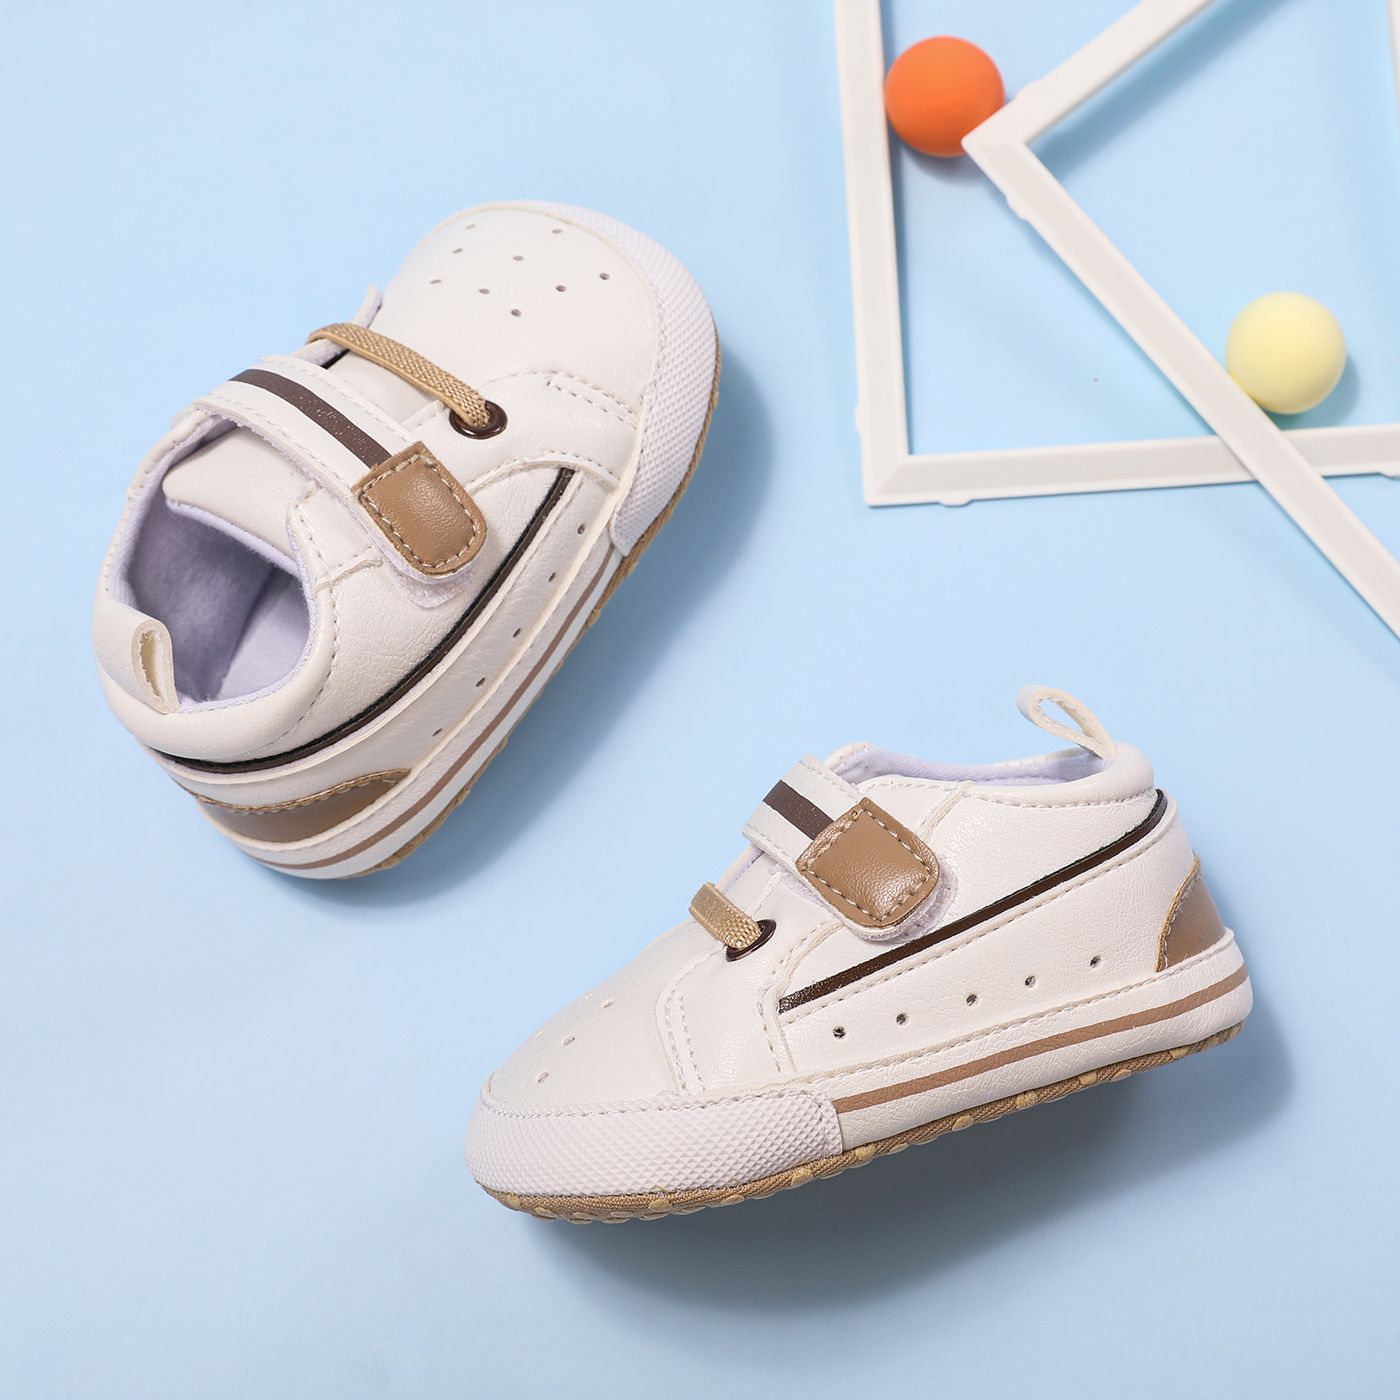 Chaussures Velcro Prewalker Pour Bébés Et Tout-petits